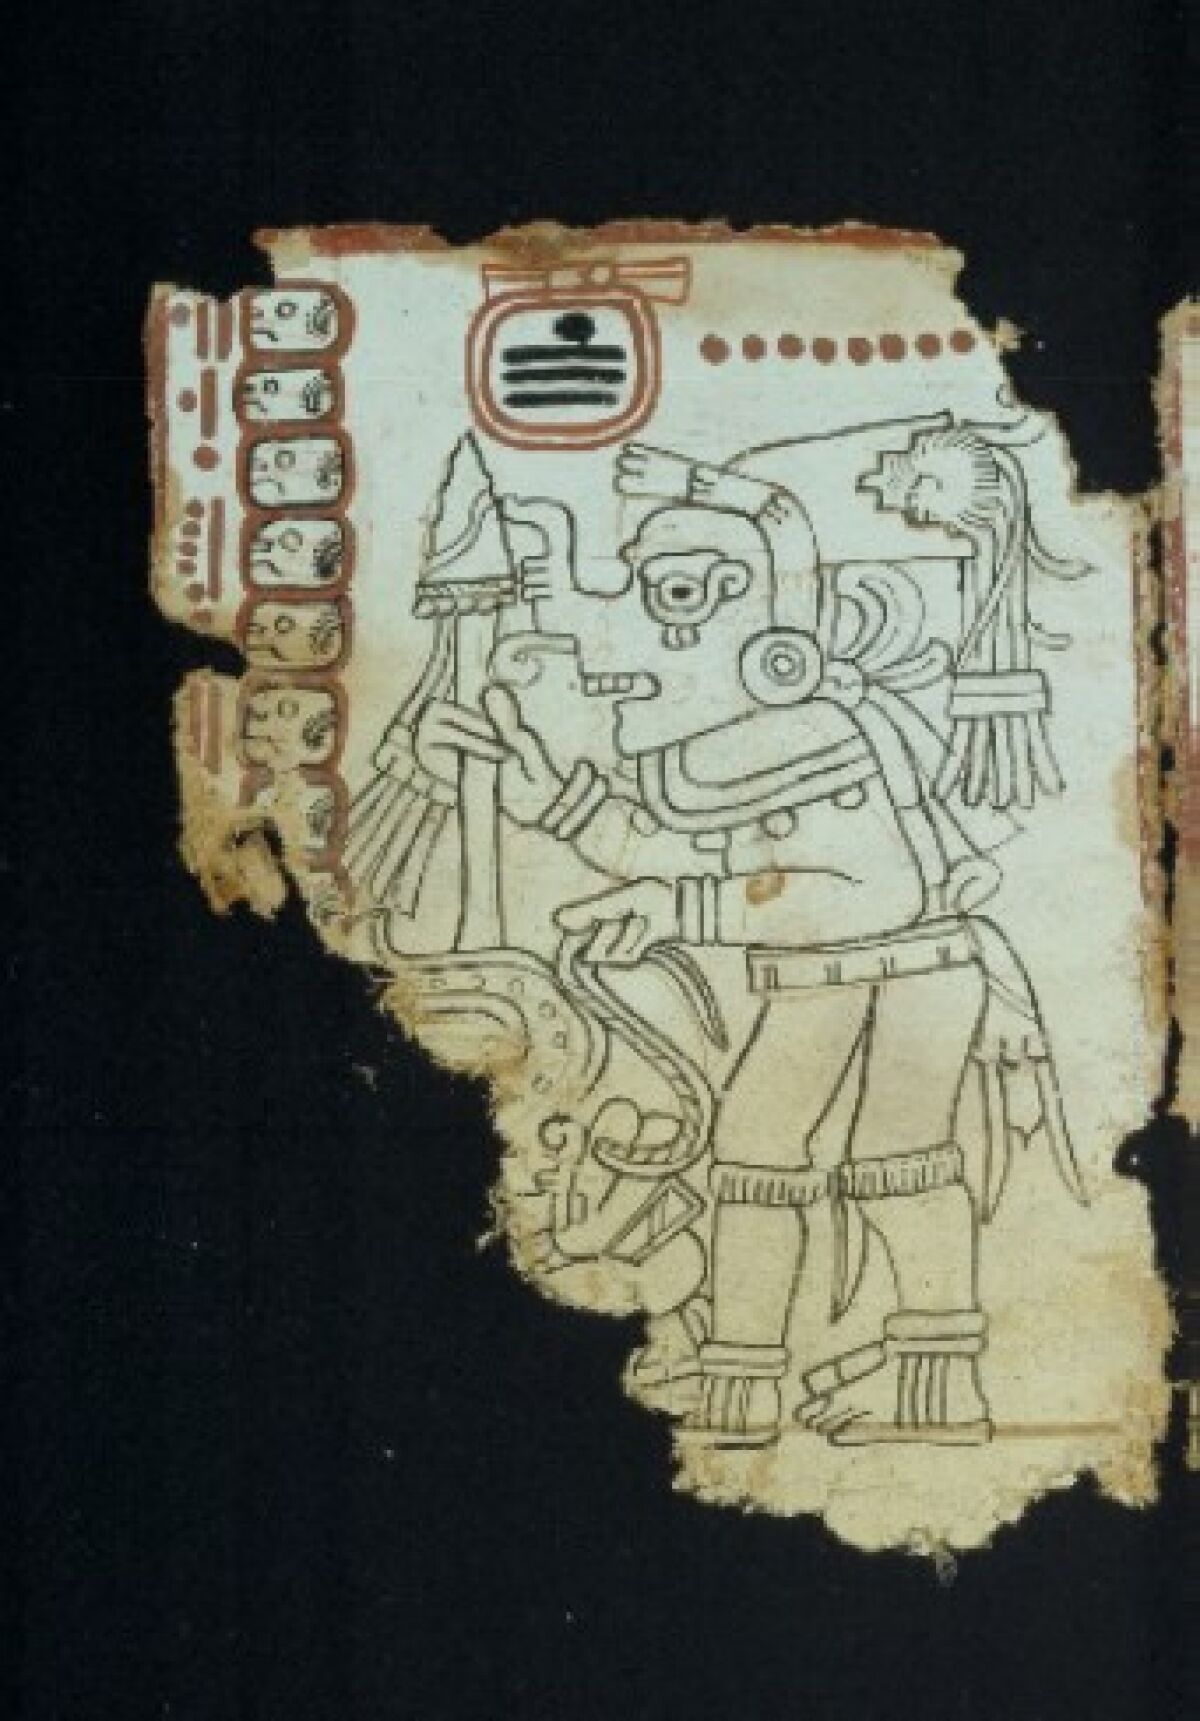 Pagina 6 del Códice Maya de México.